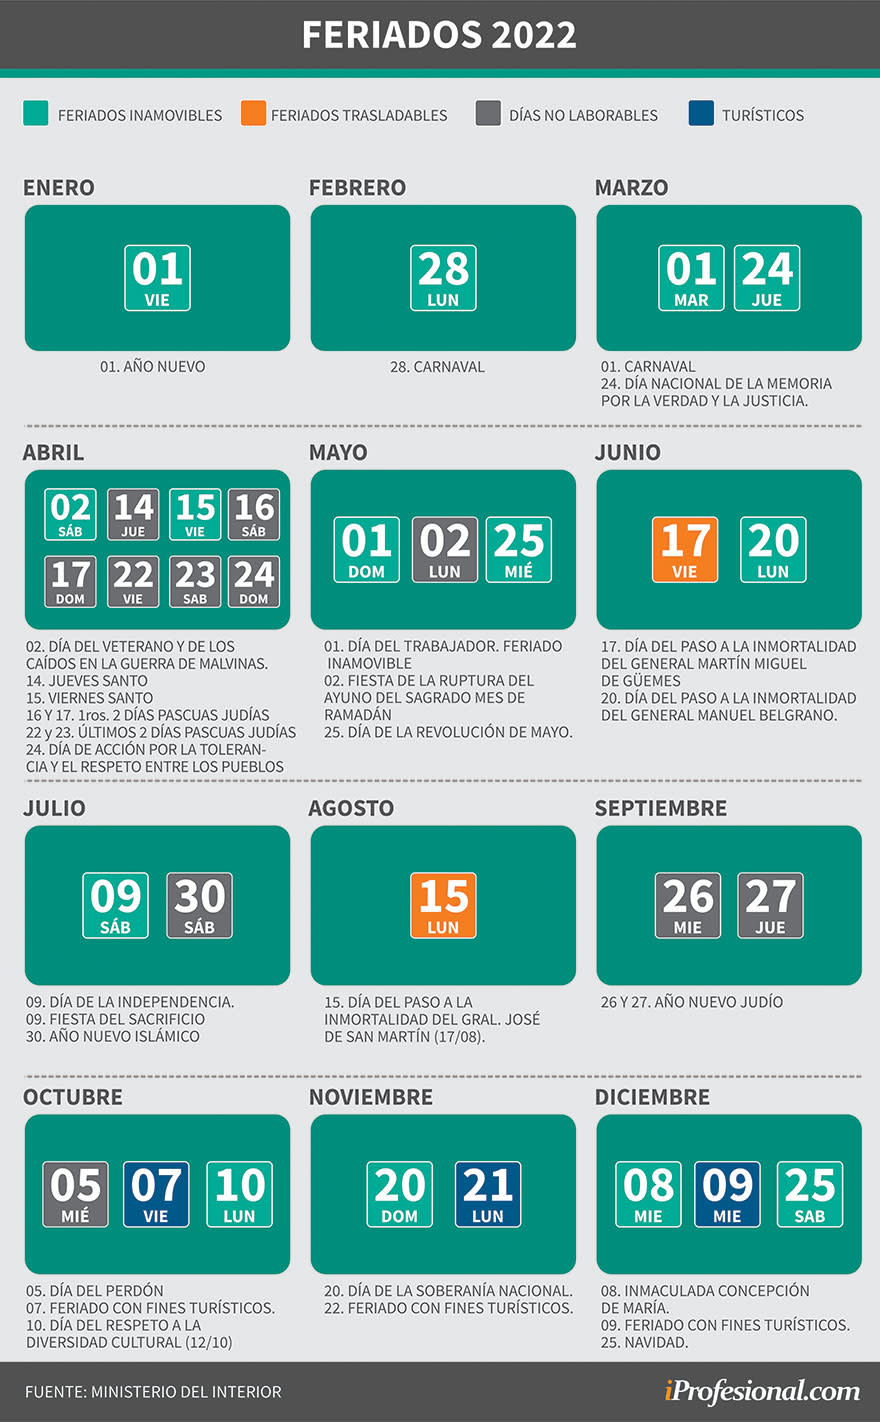 Todos los días feriado del 2022, de acuerdo al Calendario Oficial del Ministerio del Interior